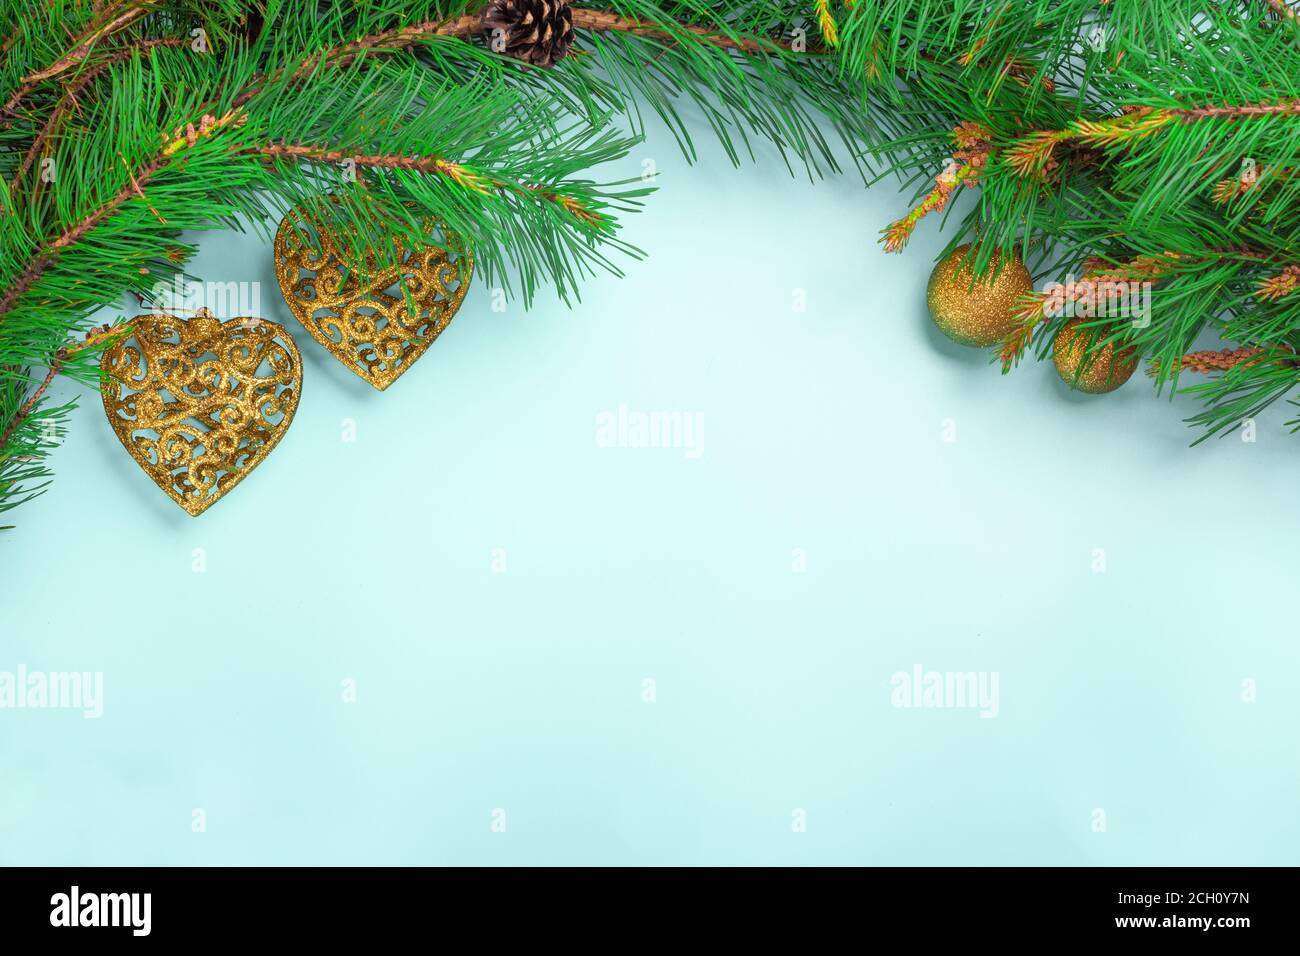 Weihnachtsdekoration mit Stechpalme, saisonaler Hintergrund für Grußkarten. Konzept für das neue Jahr. Tannenzweige und Geschenkboxen, Sterne und Kiefer. Stockfoto